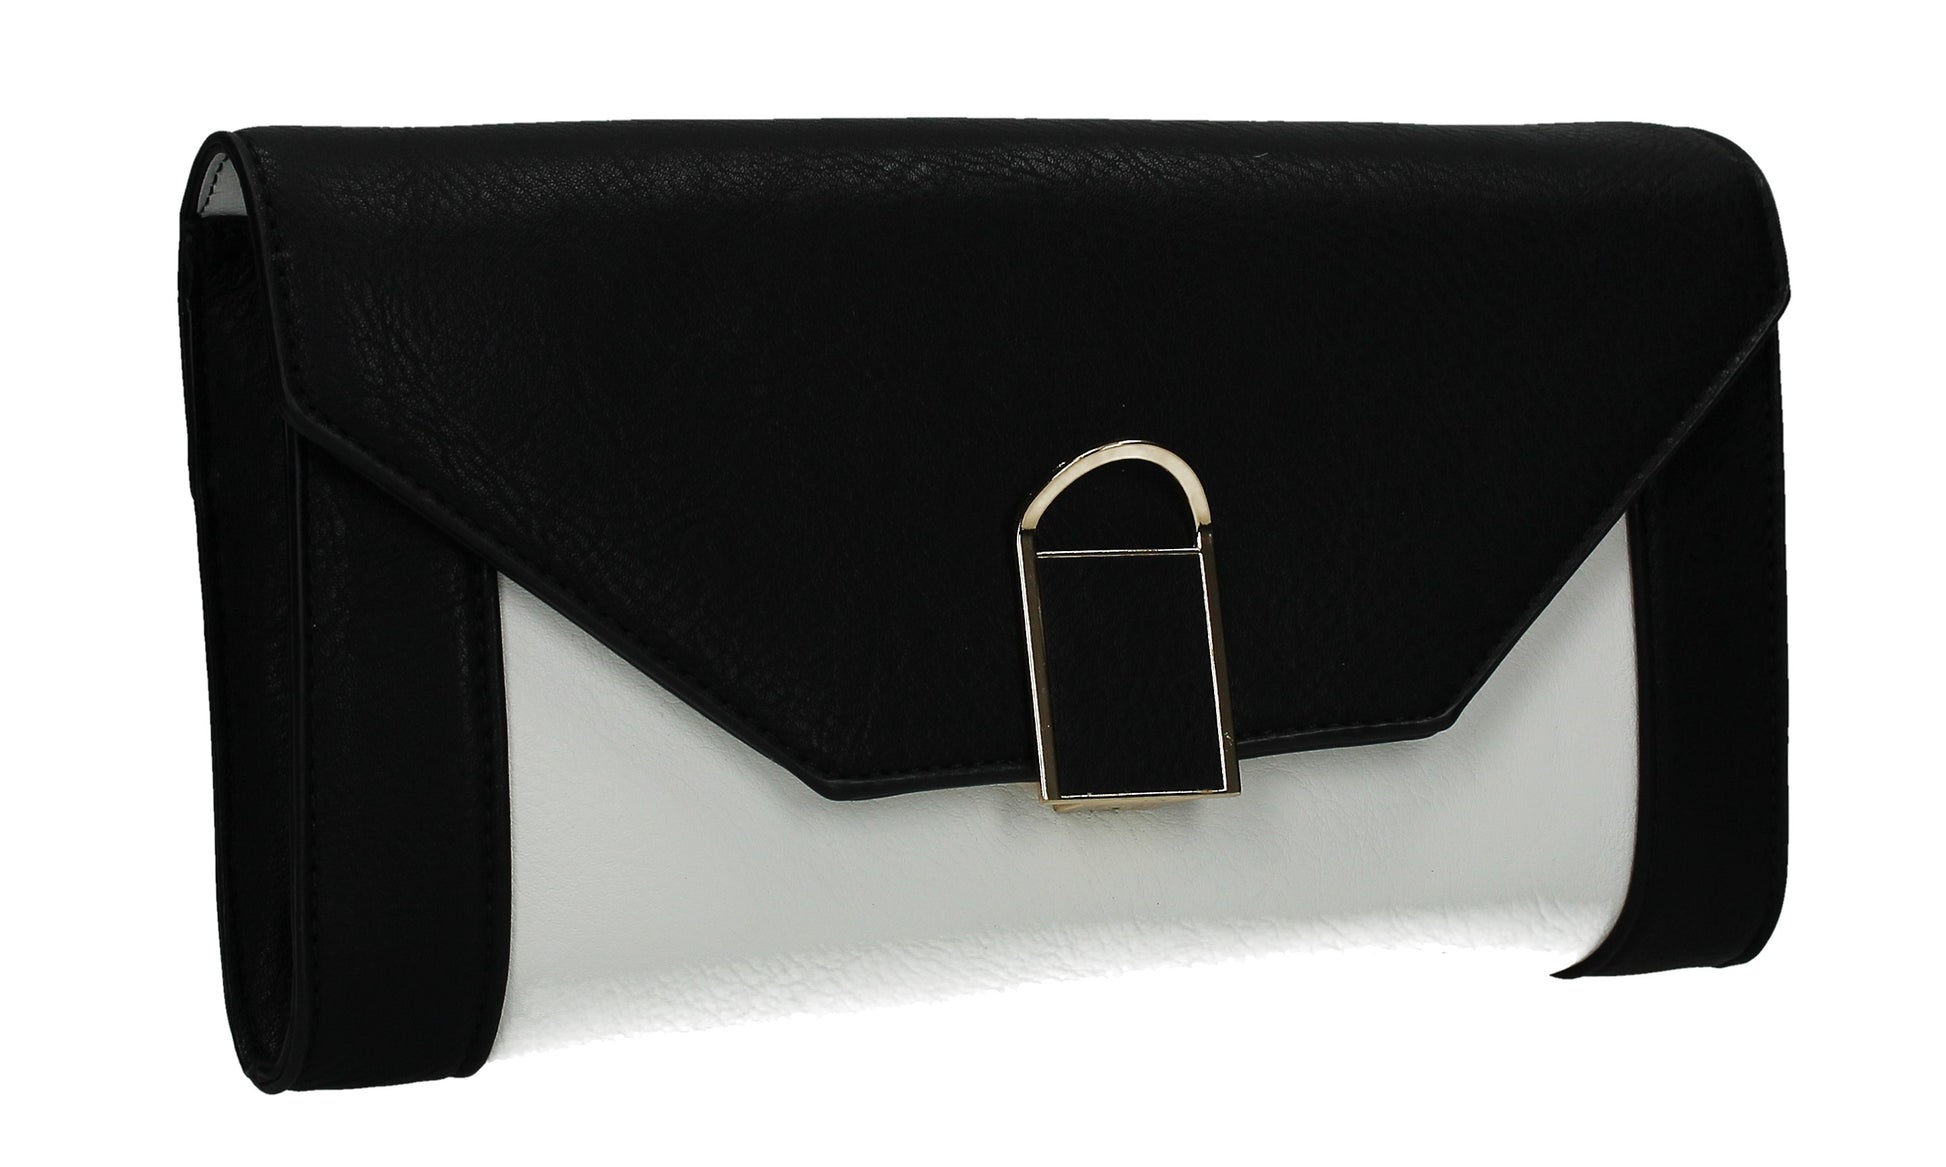 SWANKYSWANS Sydney Clutch Bag Black Cute Cheap Clutch Bag For Weddings School and Work